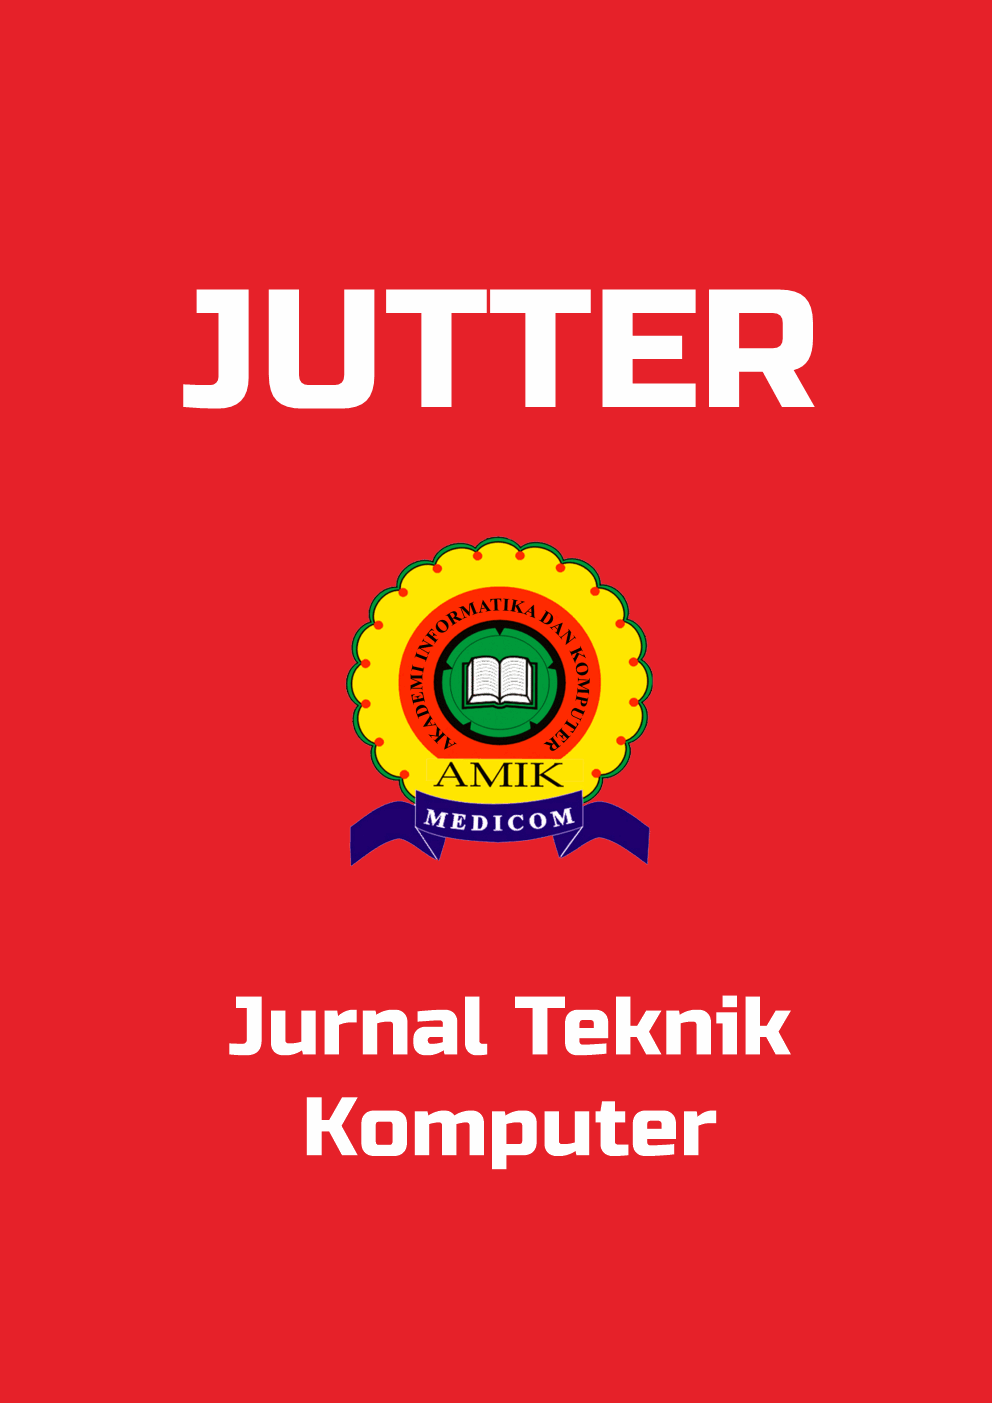 TEKNIK KOMPUTER JOURNAL